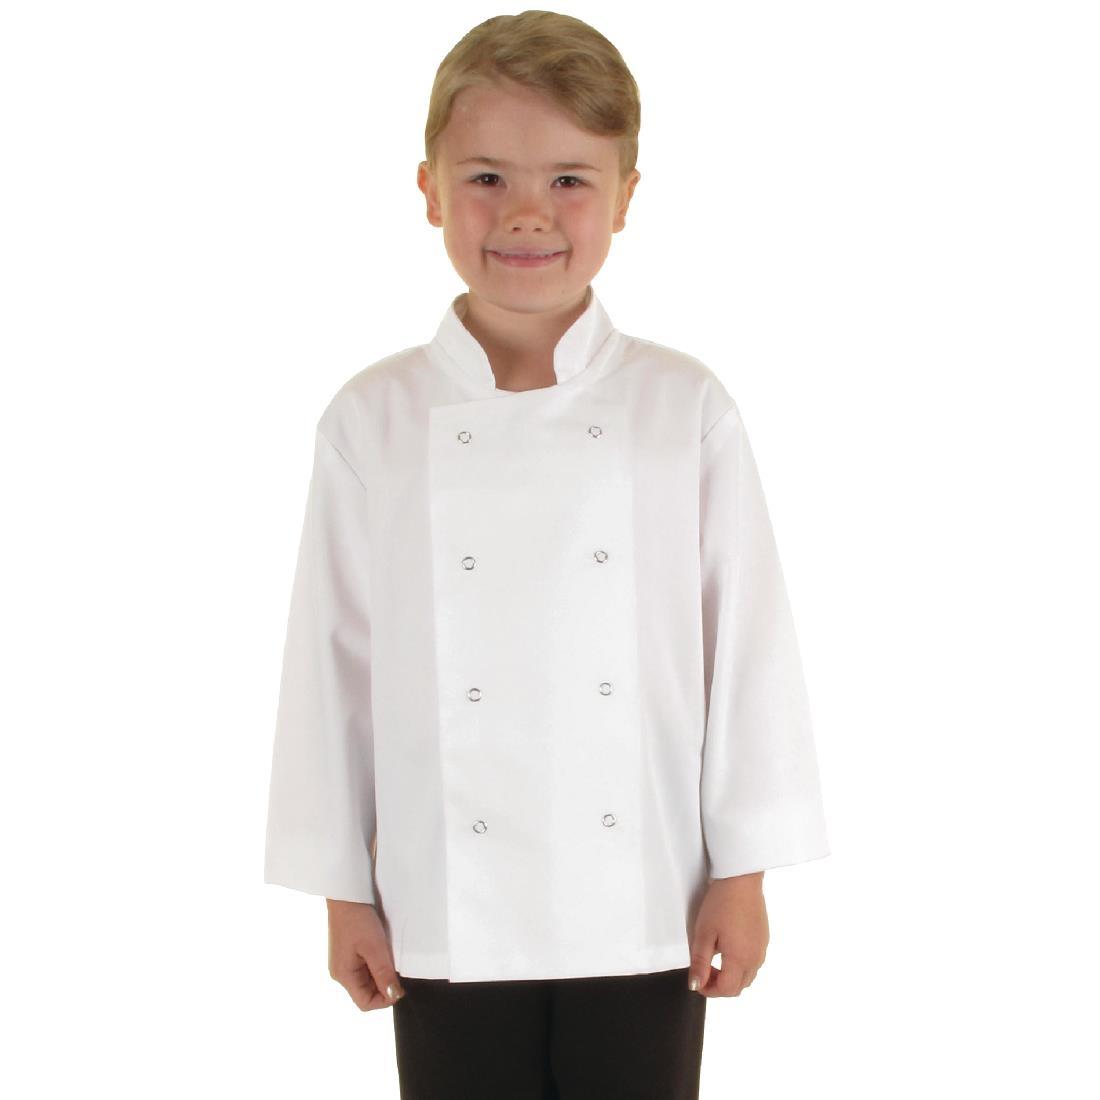 Whites Childrens Unisex Chef Jacket White L - B125  - 1